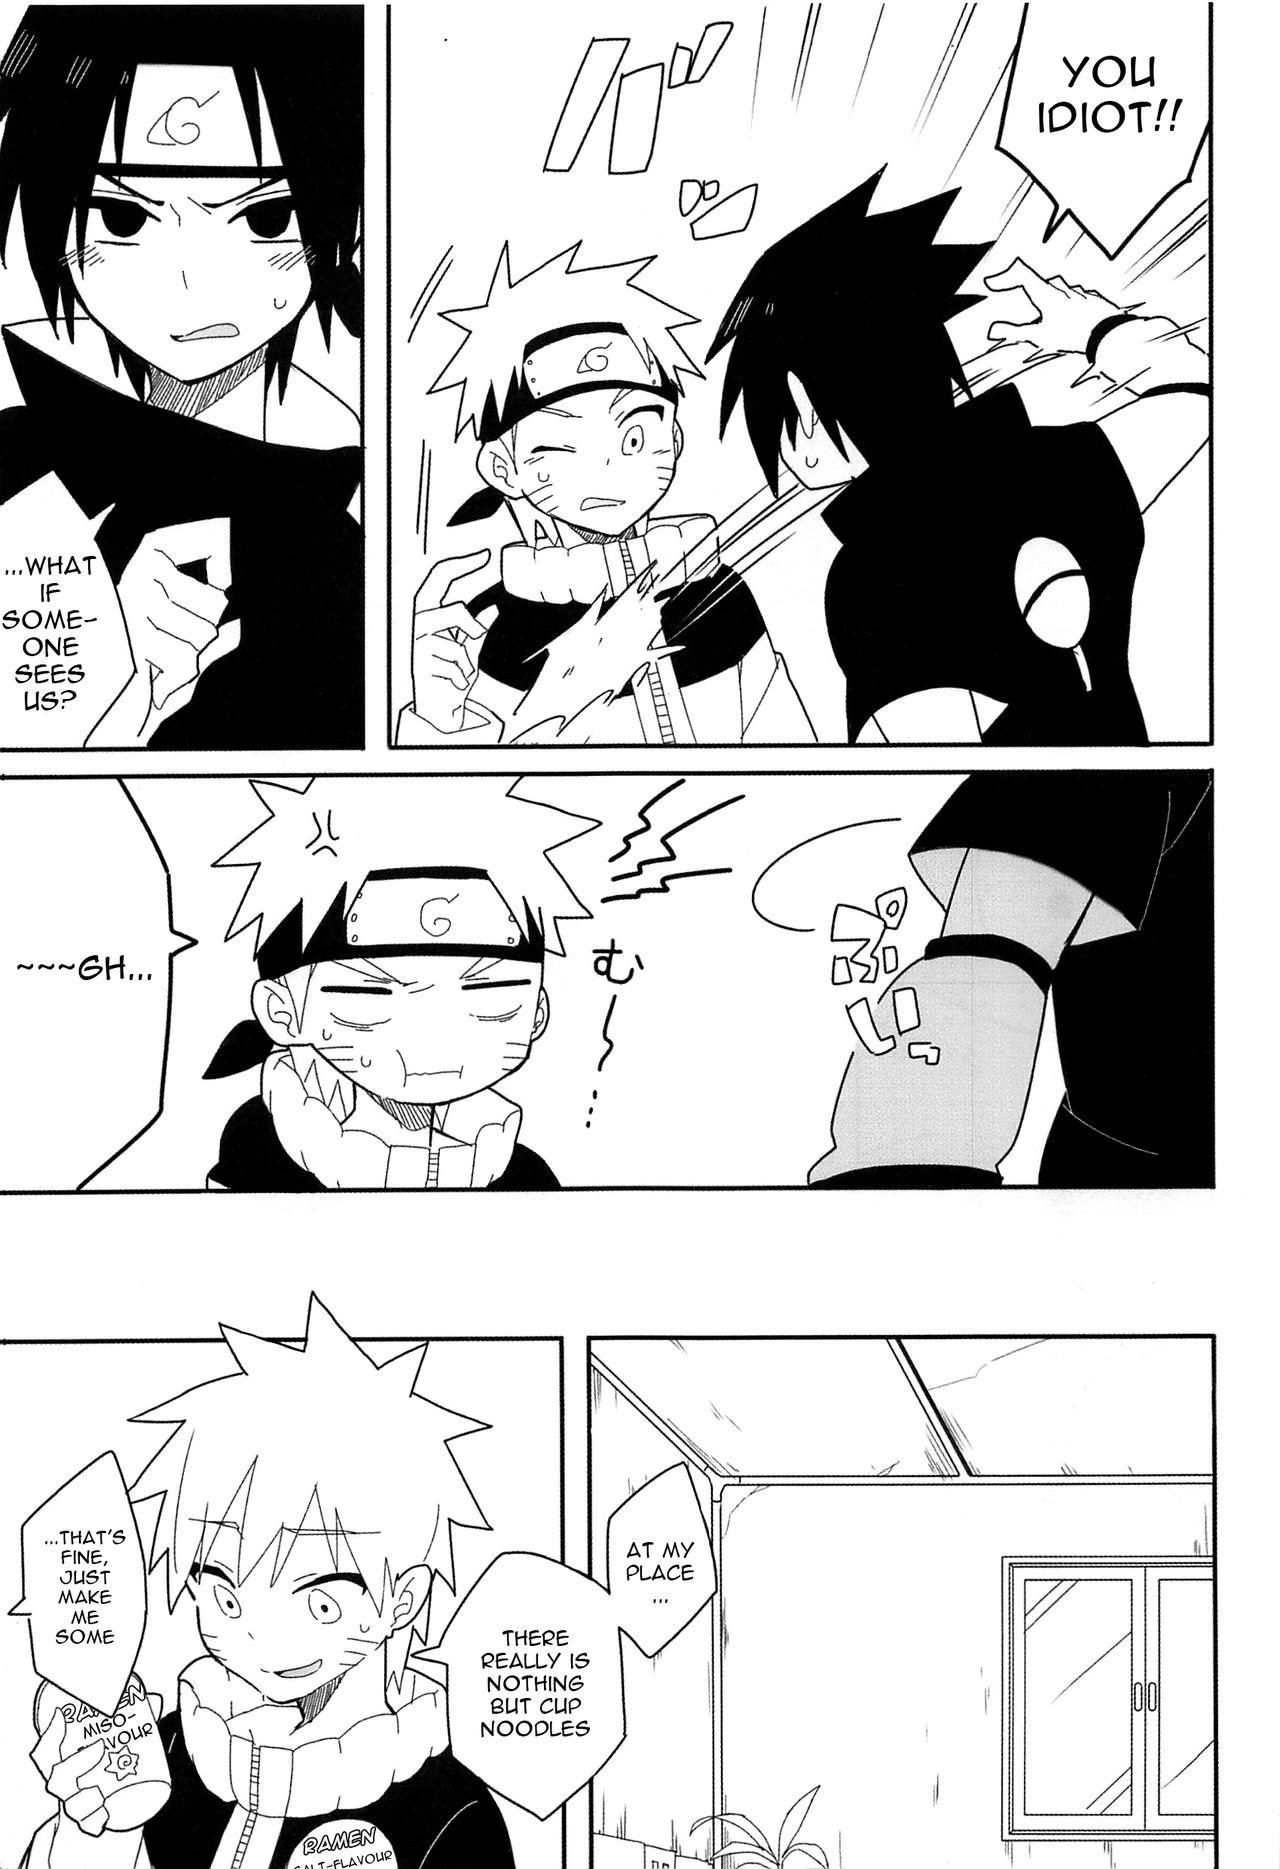 White Break through - Naruto First Time - Page 2